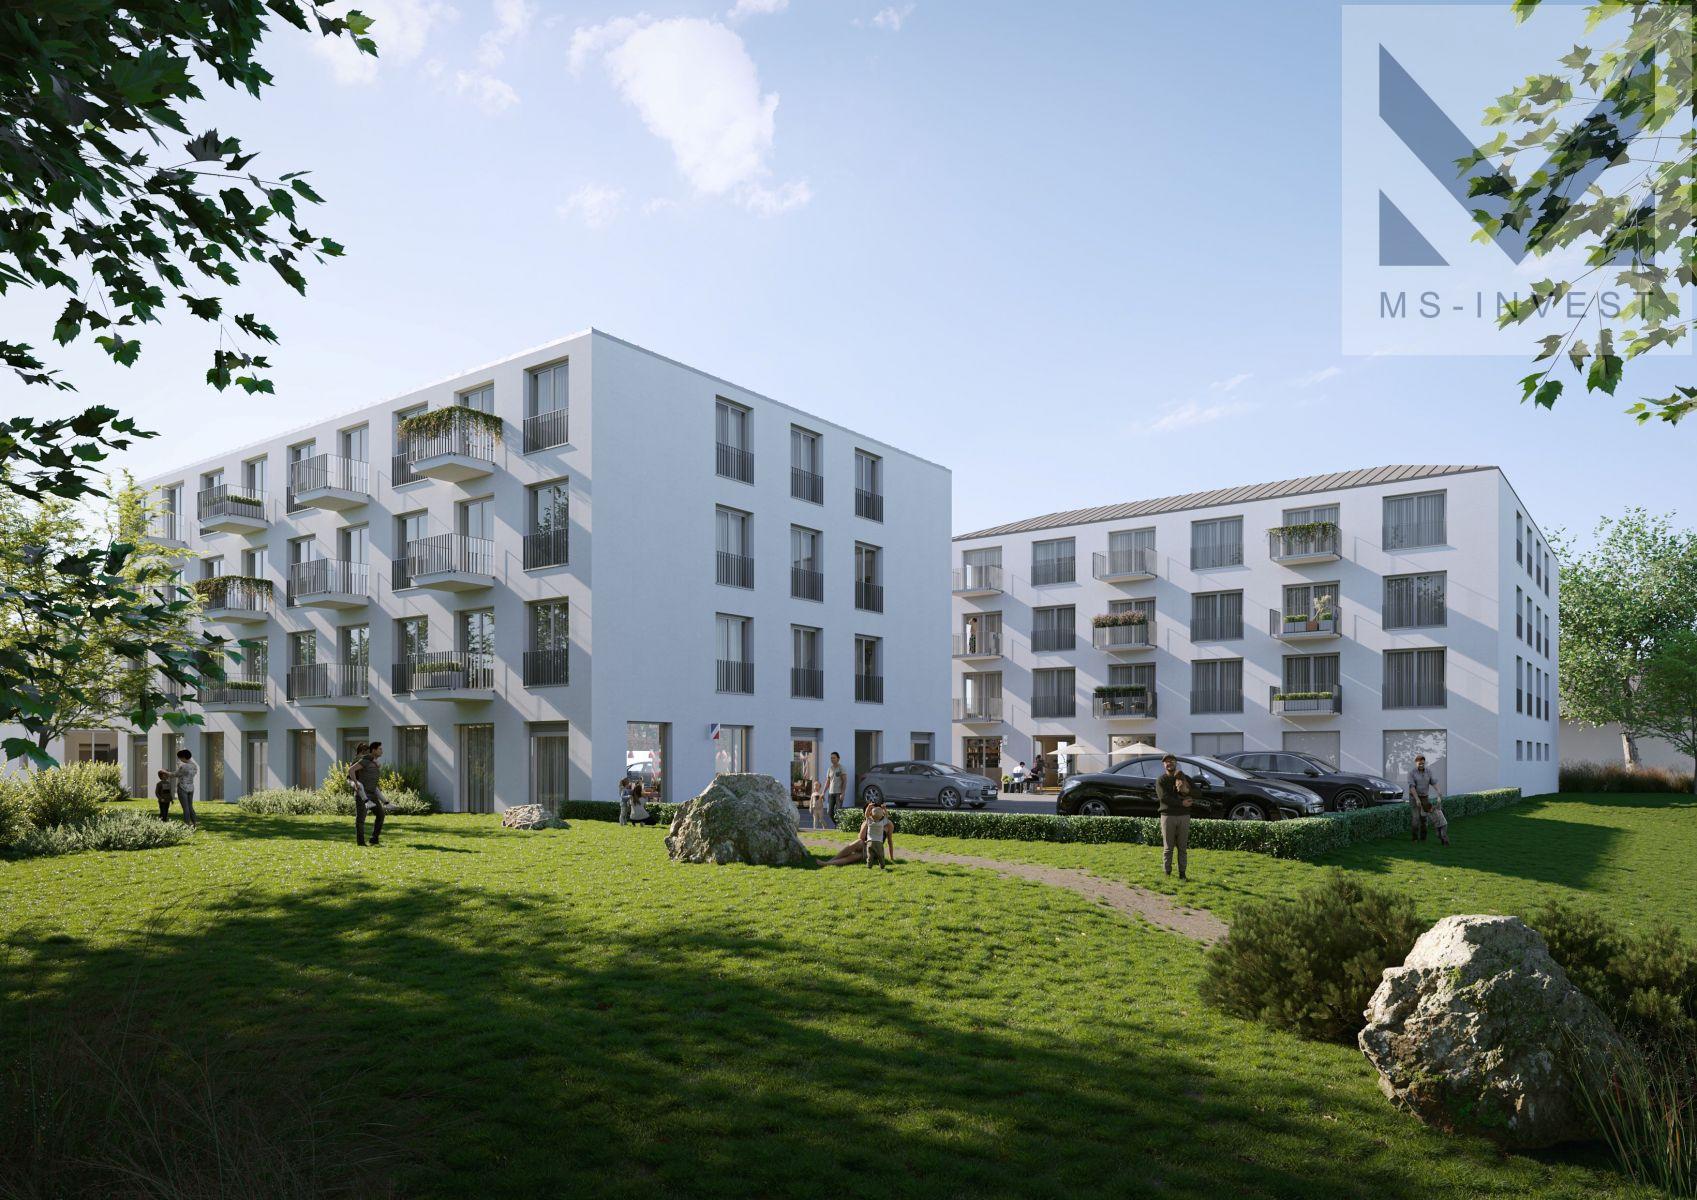 Novostavba bytu 3+kk, 67 m2 s balkony 6,5 m2, ve 4. NP nového projektu Centrum Hostivice